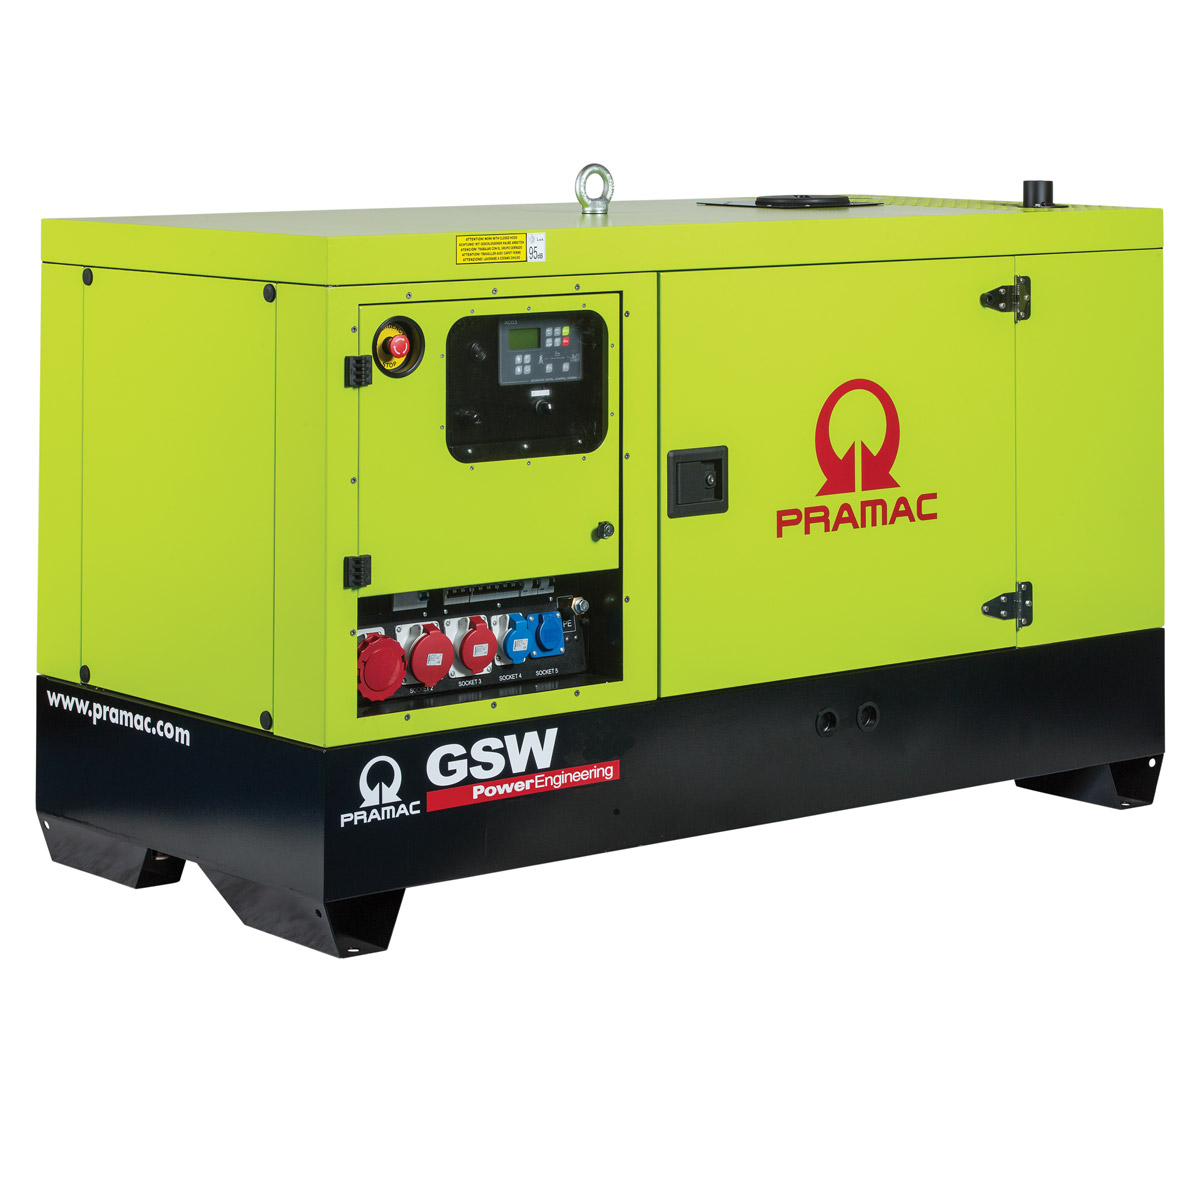 Stromerzeuger GSW 35 Pramac